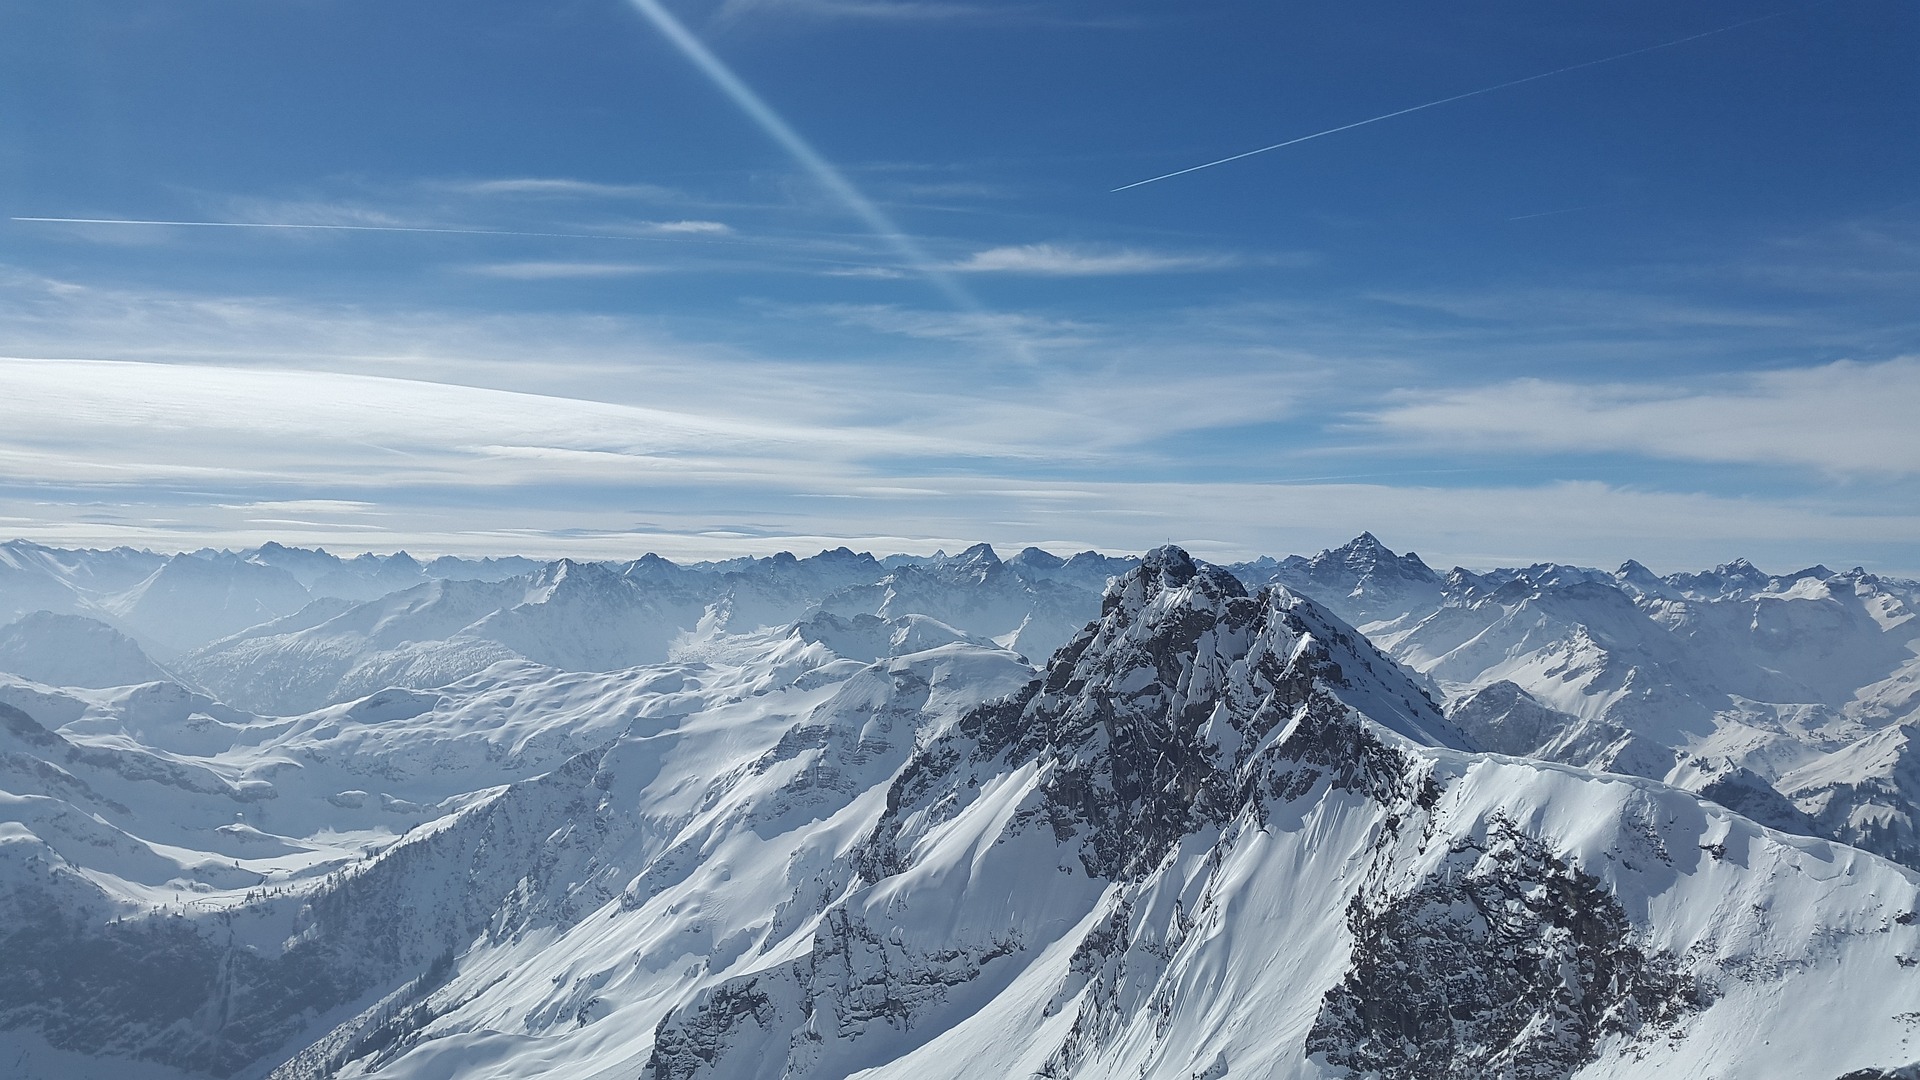 Τέσσερις νεκροί από χιονοστιβάδα στις Άλπεις - Οι επιχειρήσεις διάσωσης συνεχίζονται